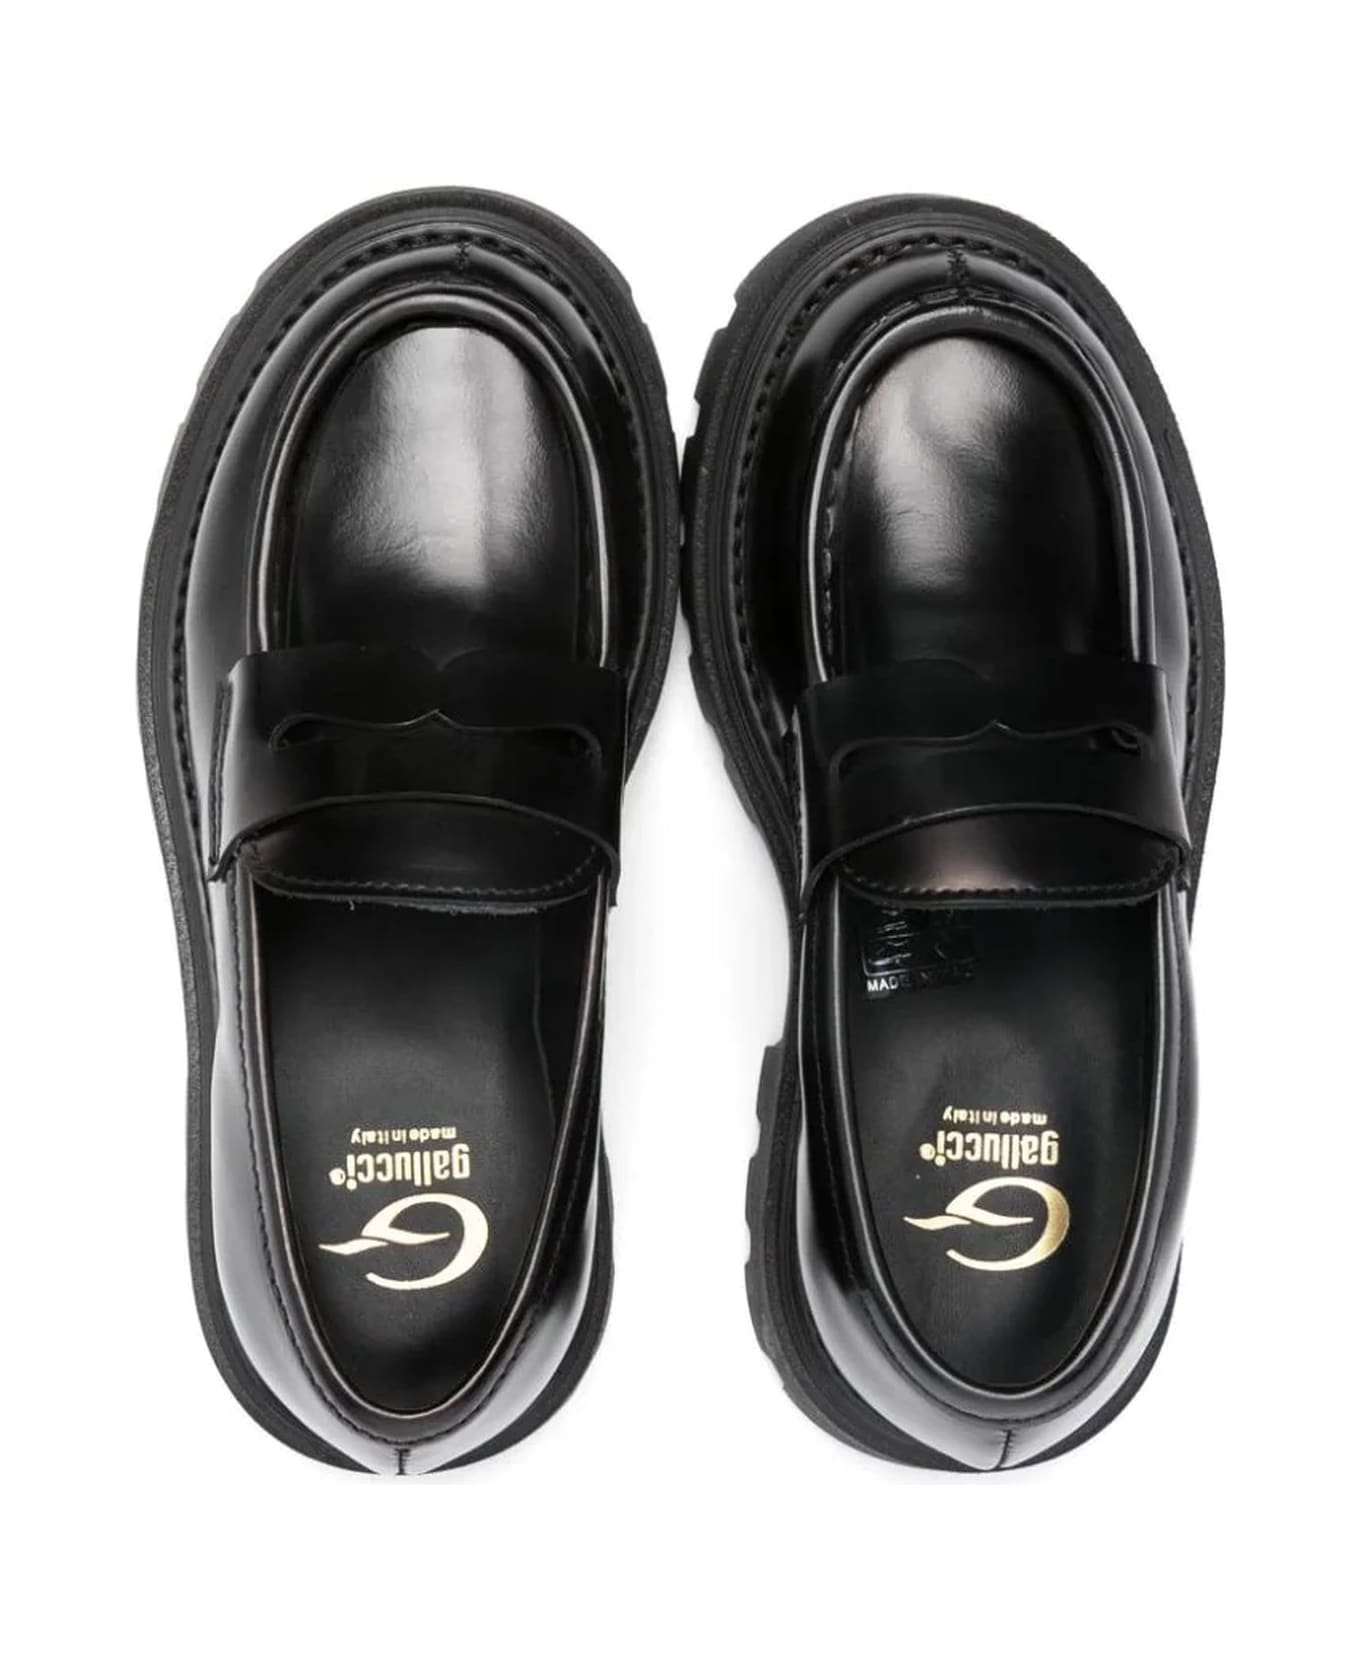 Gallucci Flat Shoes Black - Black